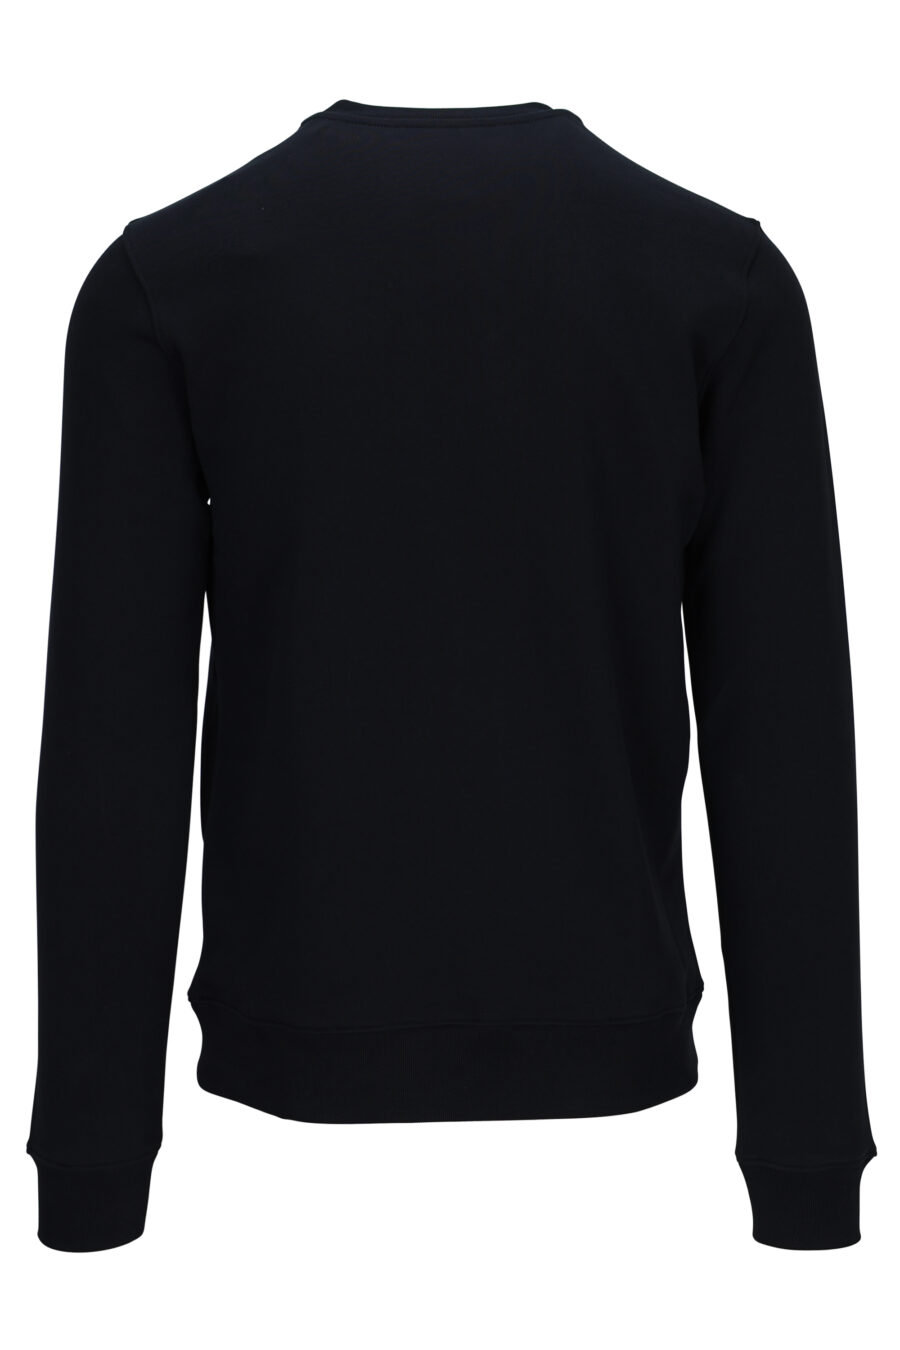 Schwarzes Sweatshirt mit Logo "teddy tailor" - 667113108247 1